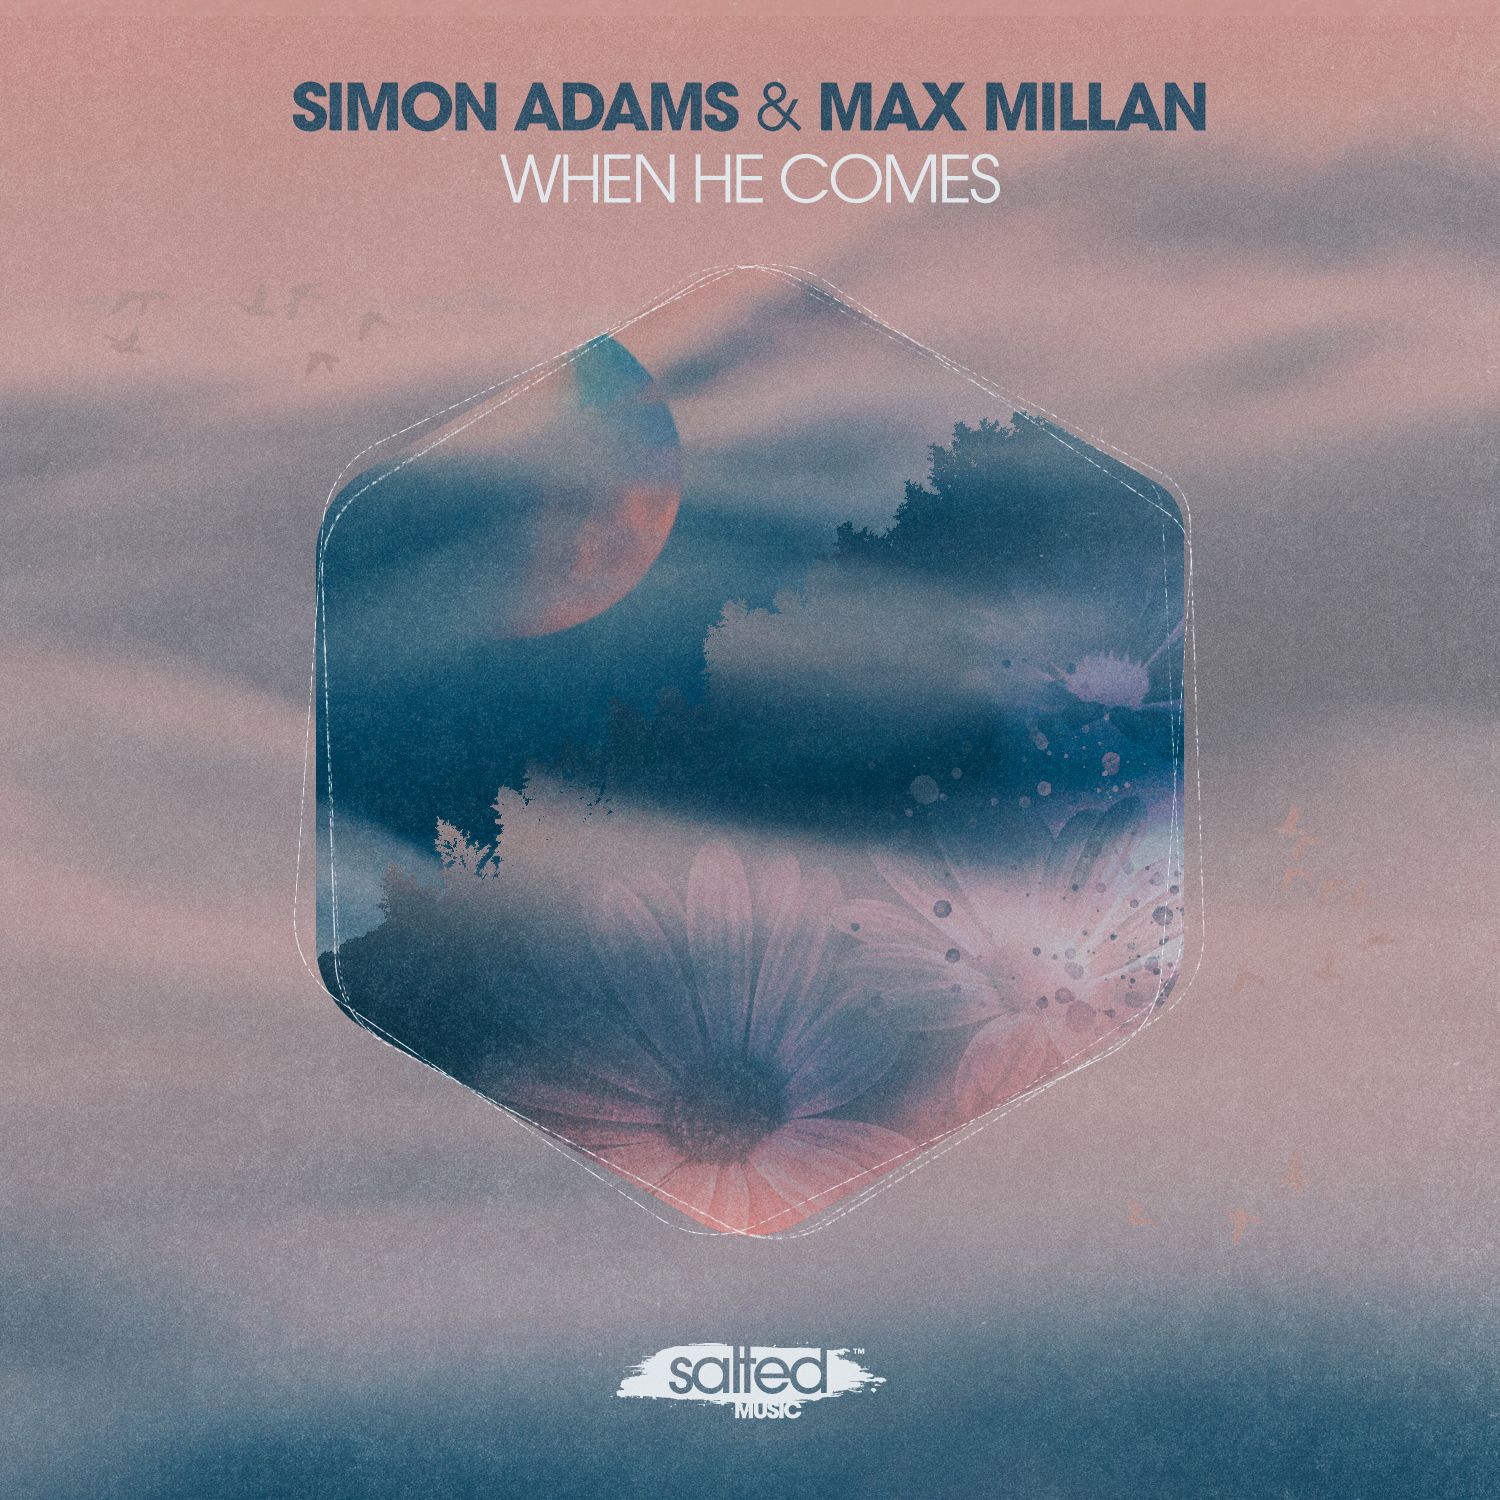 ডাউনলোড করুন Simon Adams & Max Millan - When He Comes